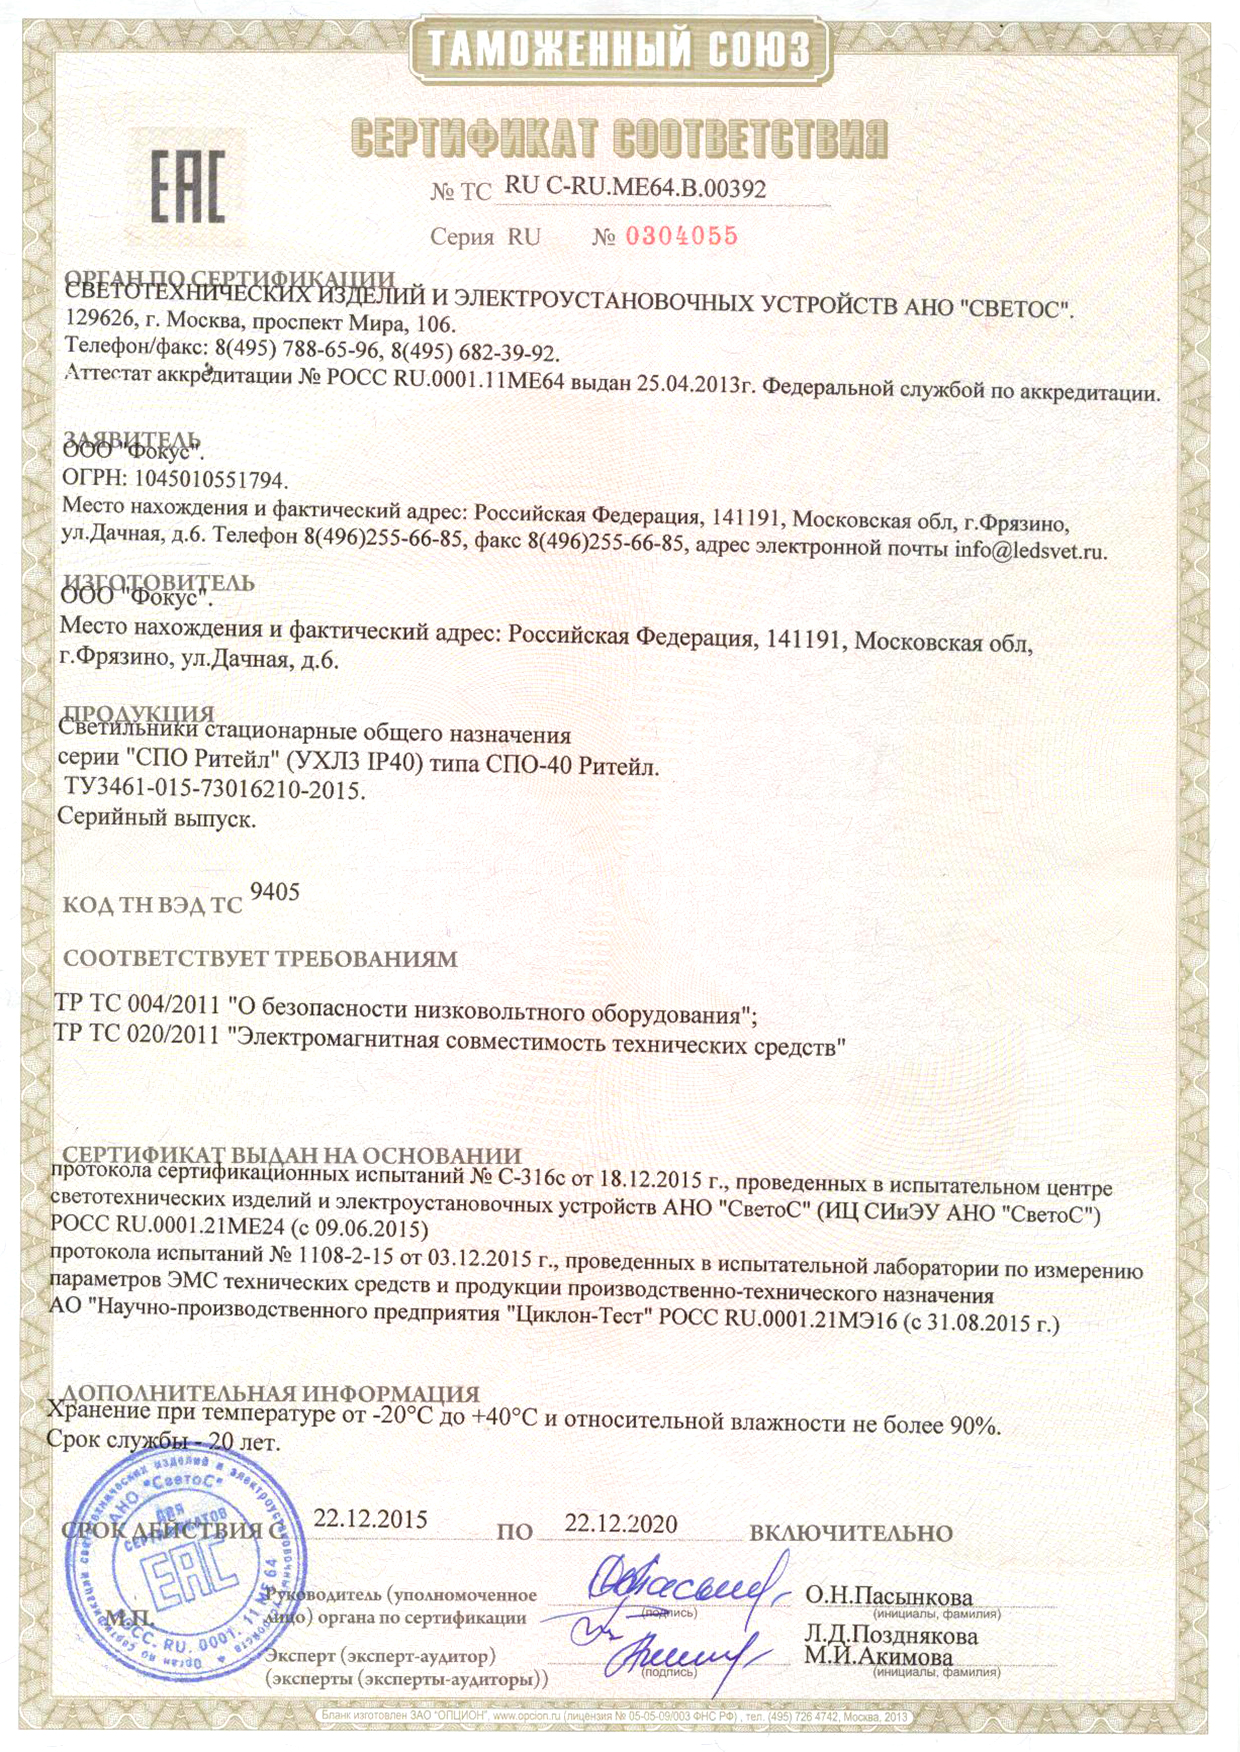 Сертификат соответствия Таможенного союза на светильники СПО Ритейл